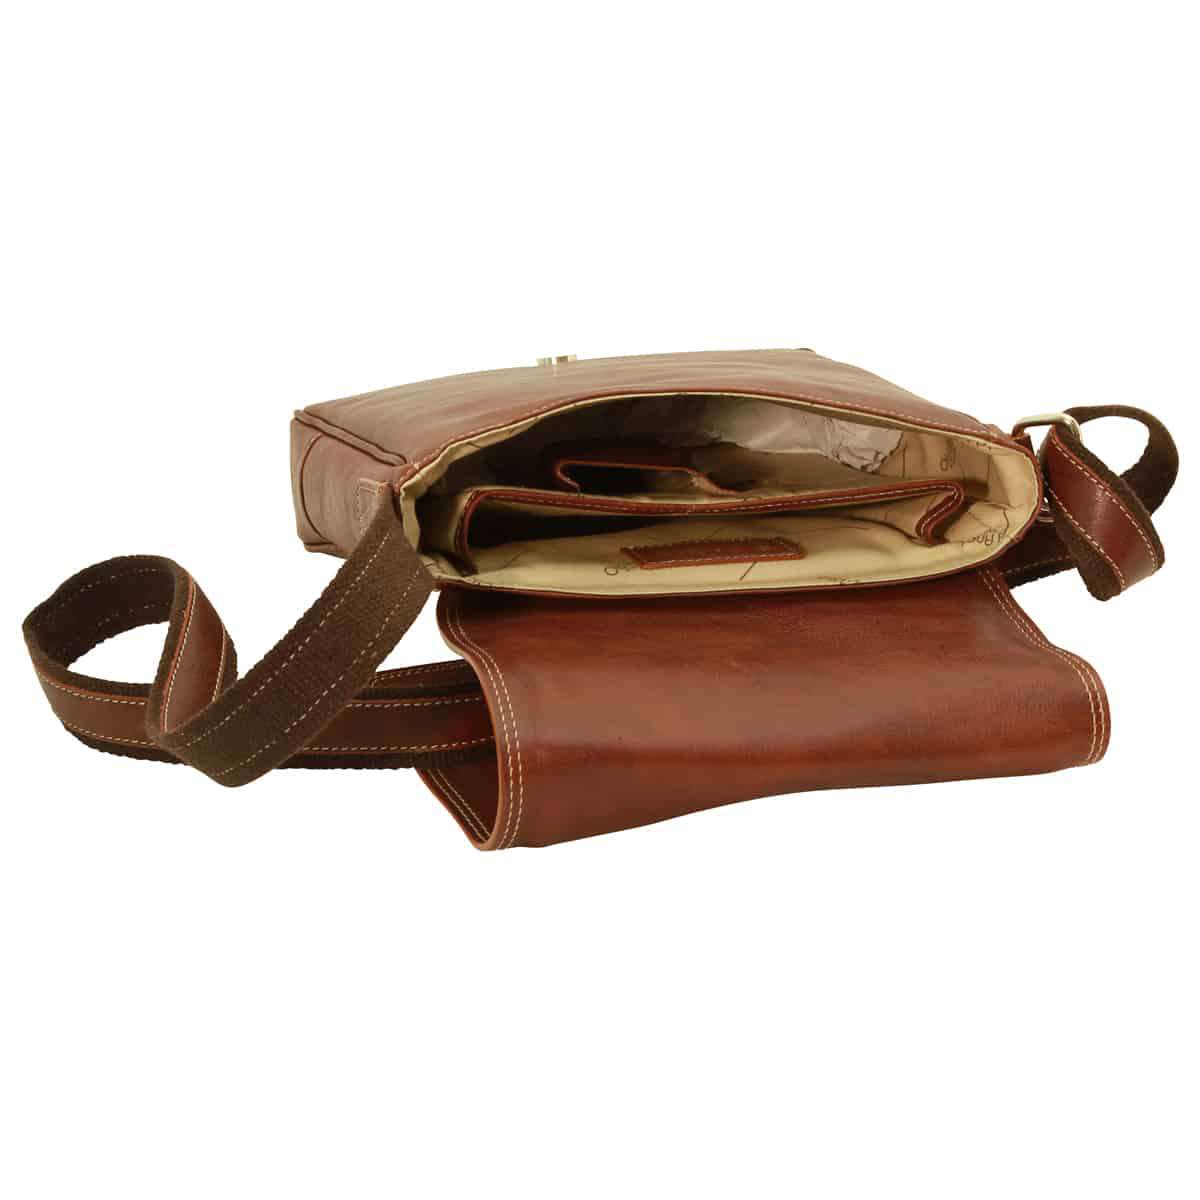 Leather I-Pad bag - Chestnut | 087361CA US | Old Angler Firenze